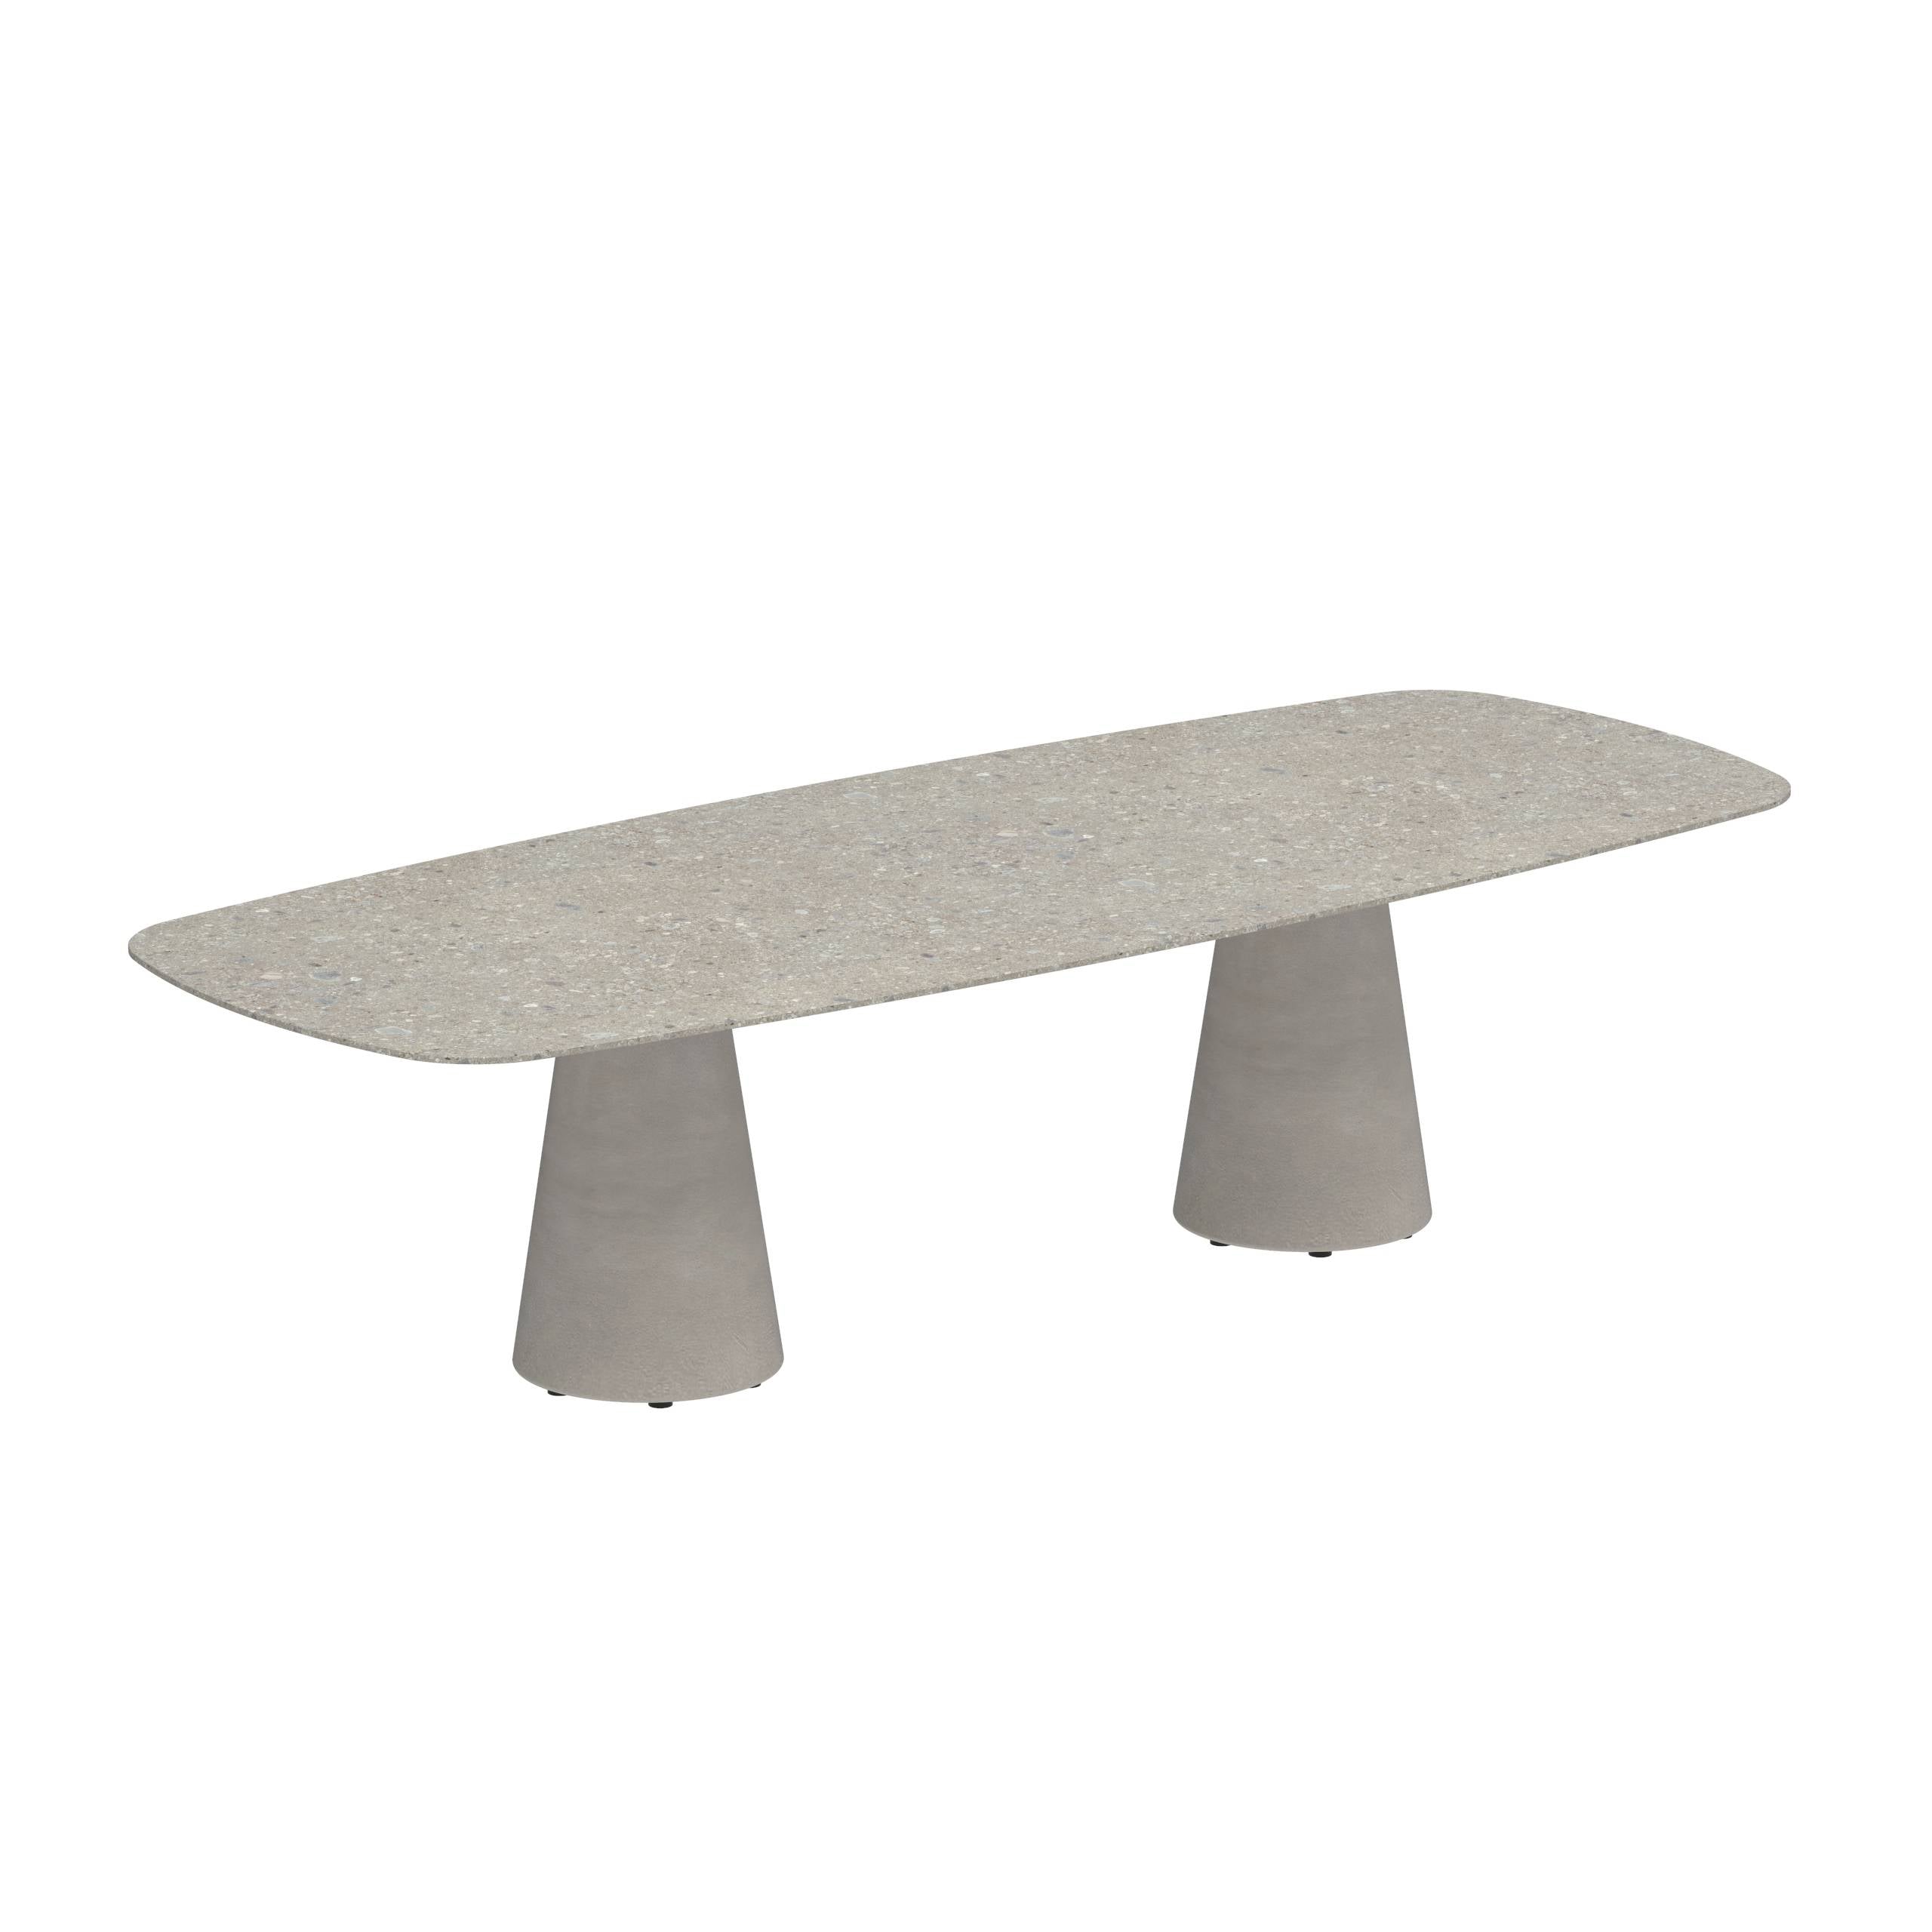 Conix Table 300x120 Cm Legs Concrete Cement Grey - Table Top Ceramic Ceppo Dolomitica